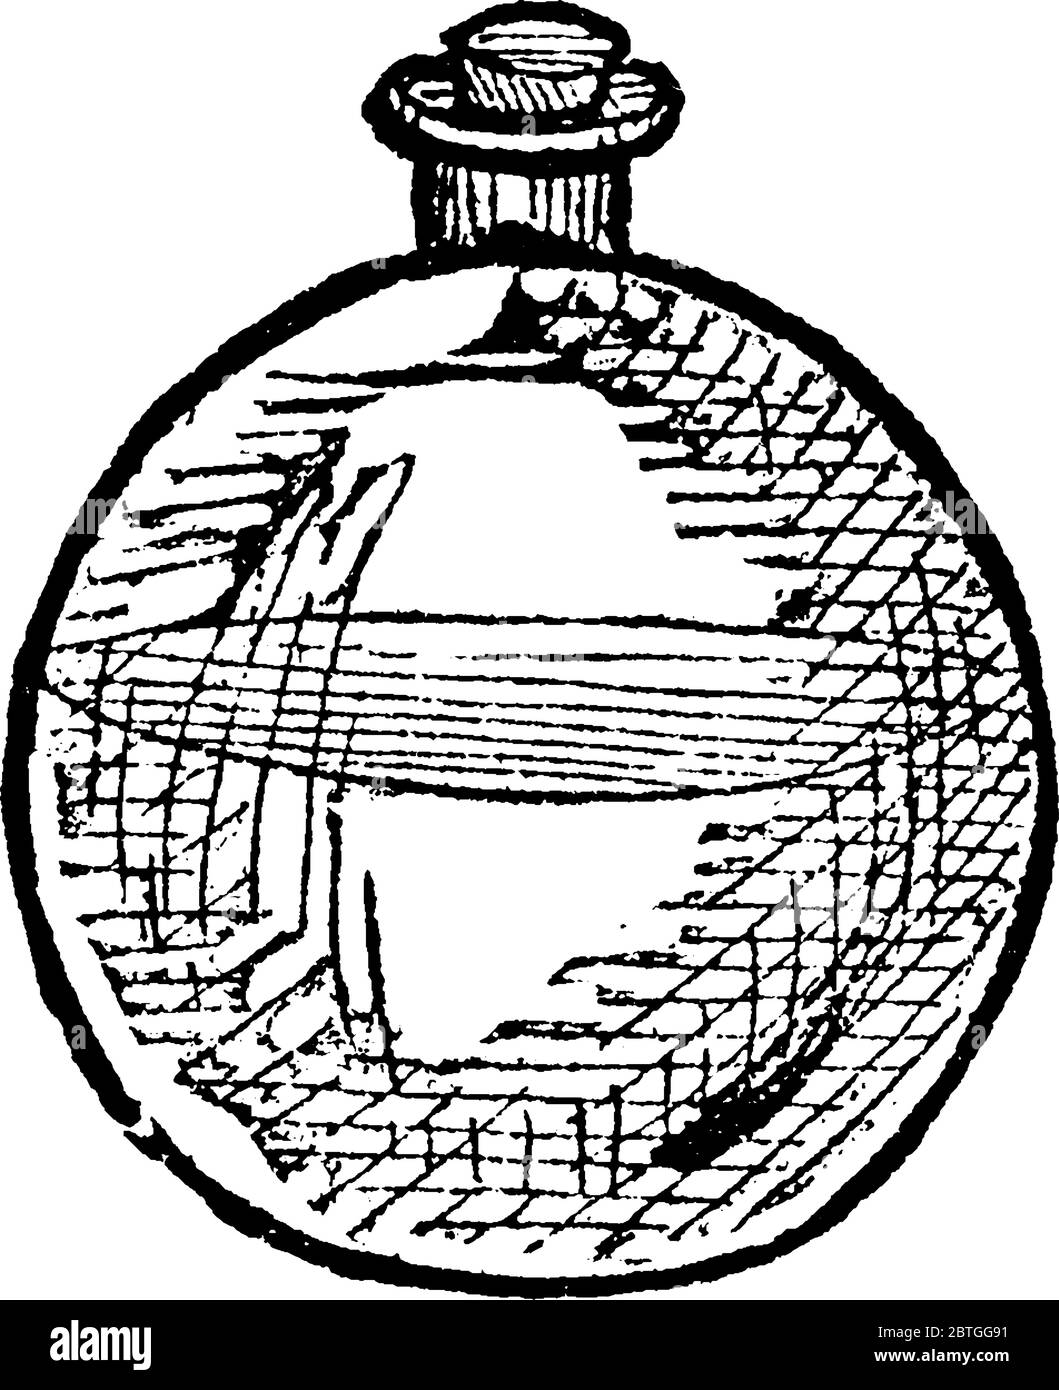 Una rappresentazione tipica di un pallone, un recipiente a collo stretto con un corpo sferico per contenere i fluidi e potrebbe essere coperto con il coperchio fornito, vinta Illustrazione Vettoriale